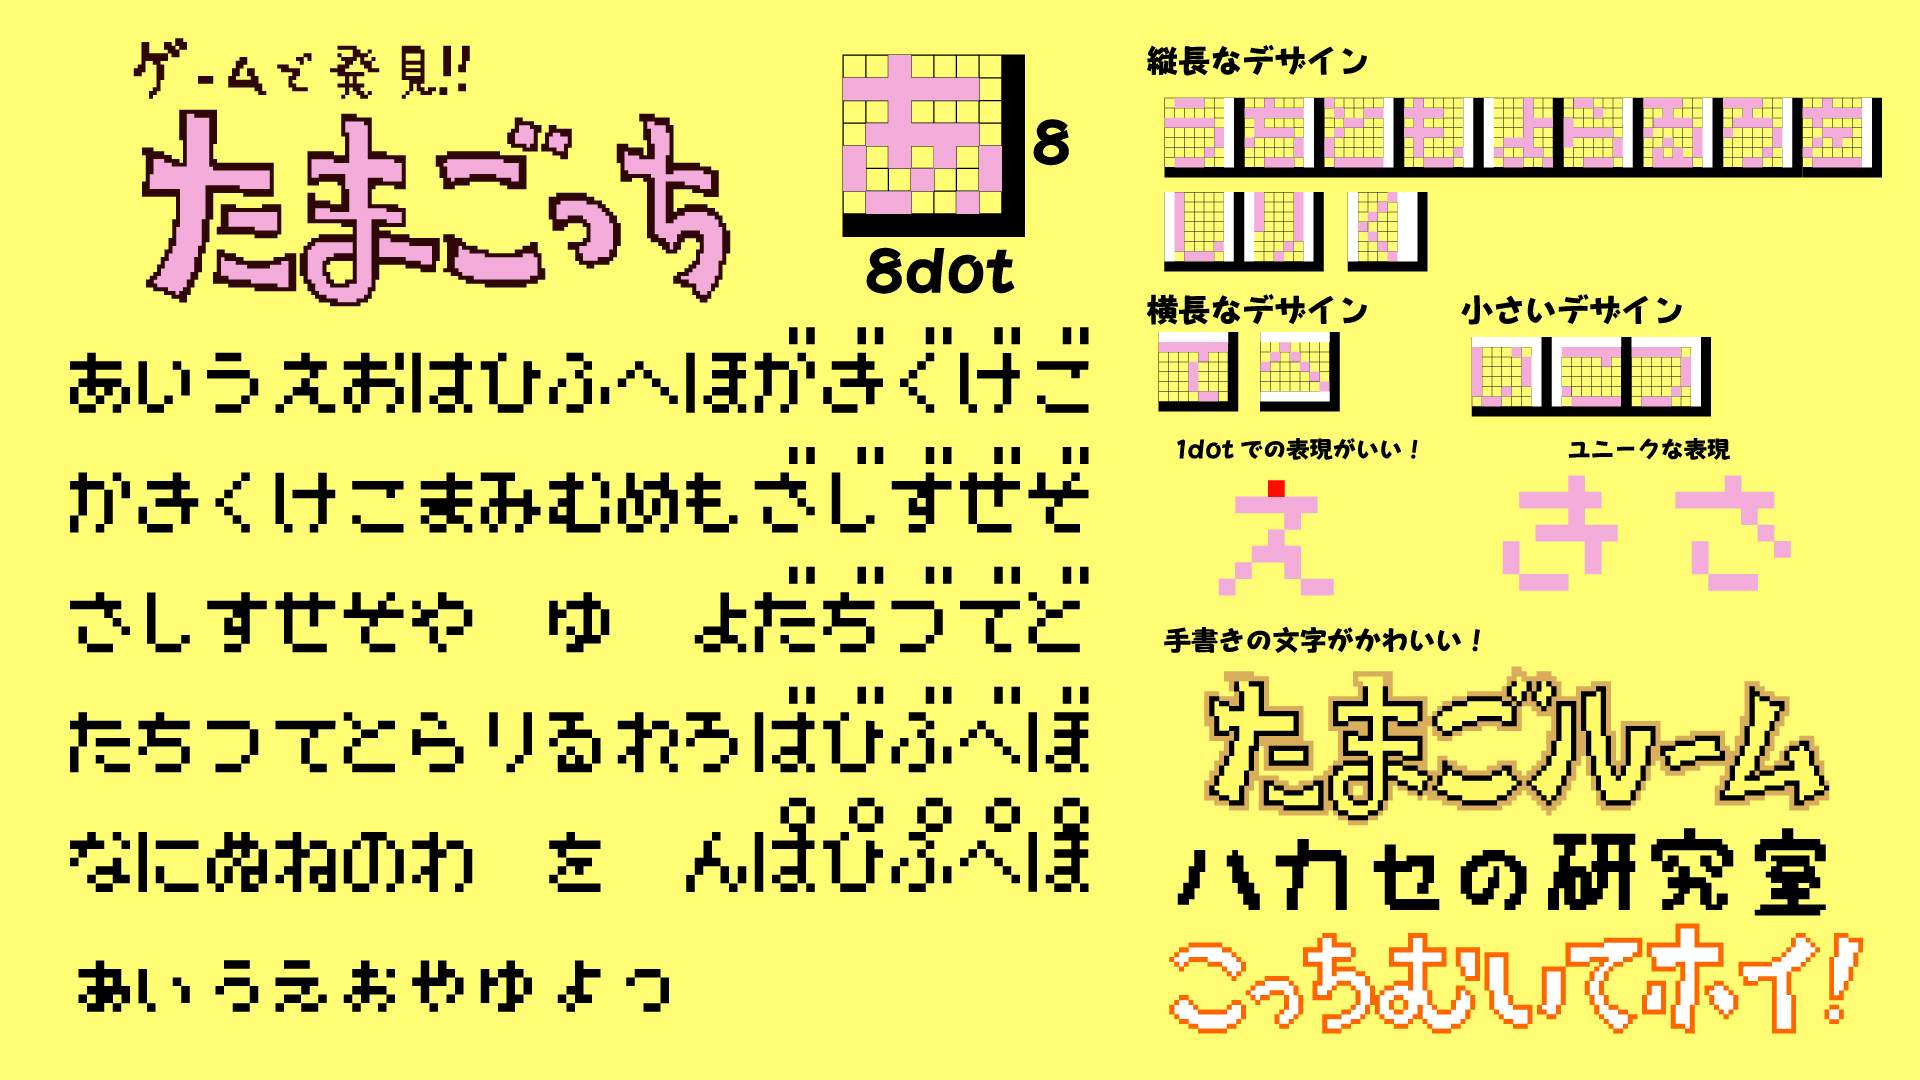 日本リテラル株式会社 第32回夜のドット文字勉強 ゲームで発見 たまごっち 1997 バンダイ Gb 8 8dot さ き がユニークなデザインで面白いです え の一画目のデザインが参考になります タイトルなどに使われている手書き文字は可愛く